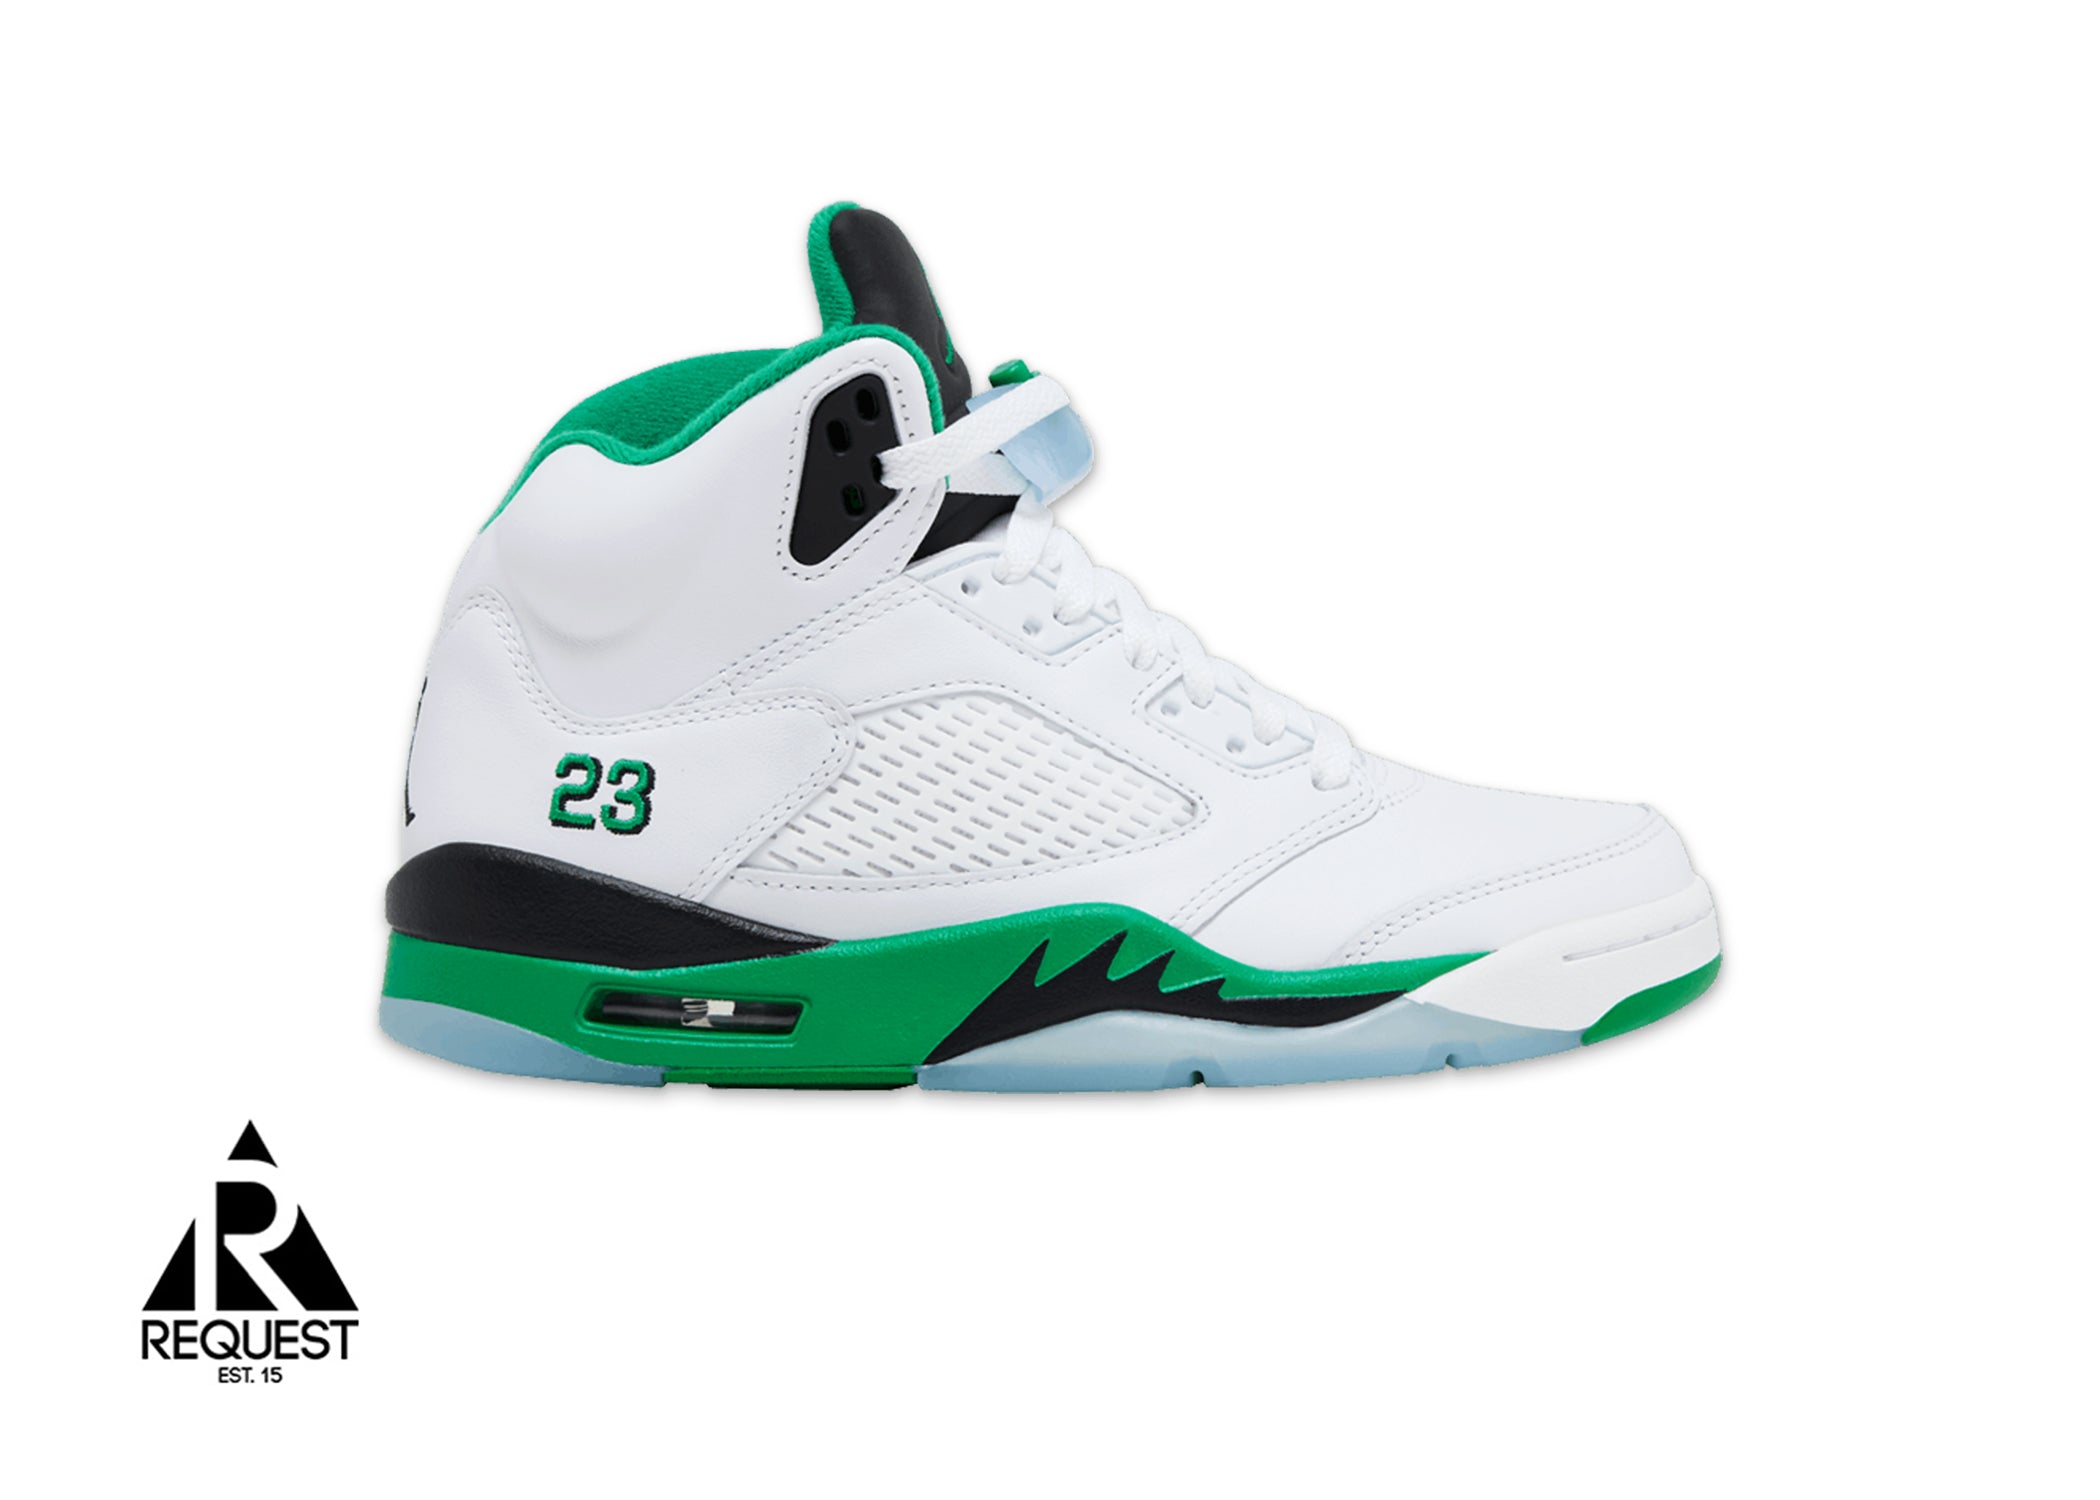 Air Jordan 5 Retro "Lucky Green" (W)